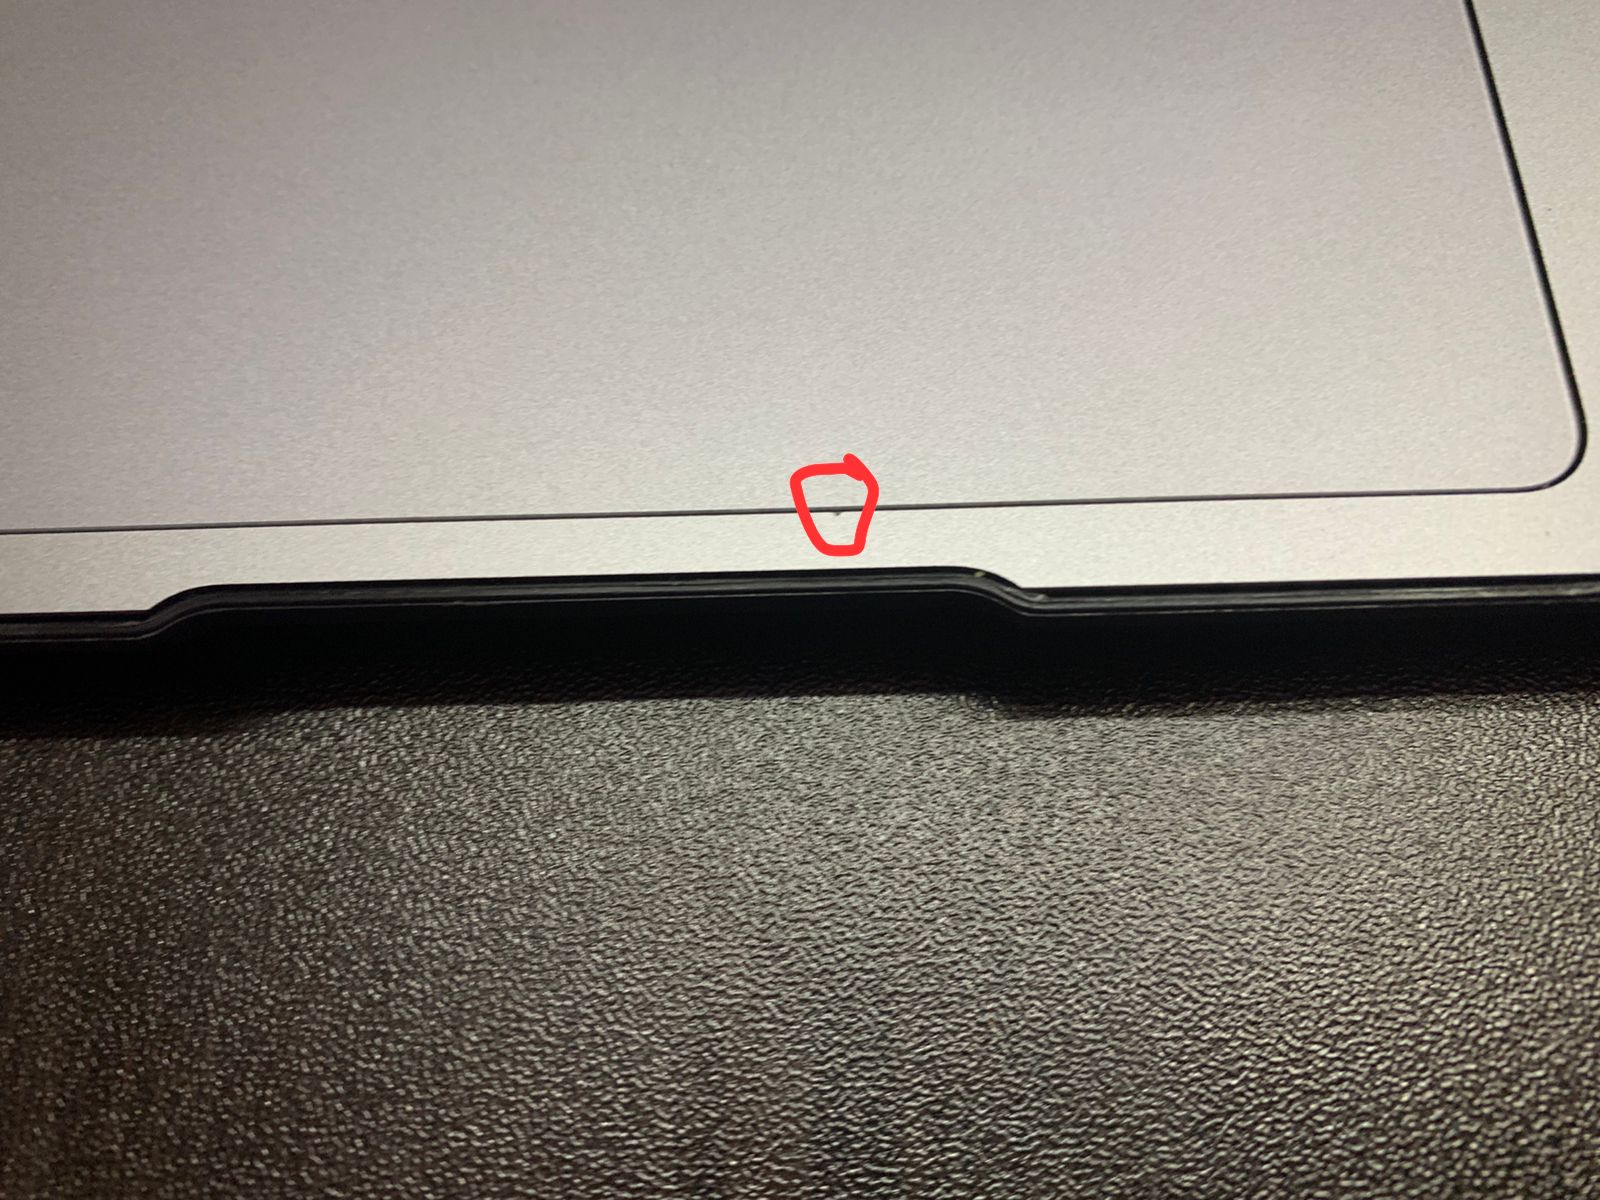 ¿El MacBook Air se rompe fácilmente?